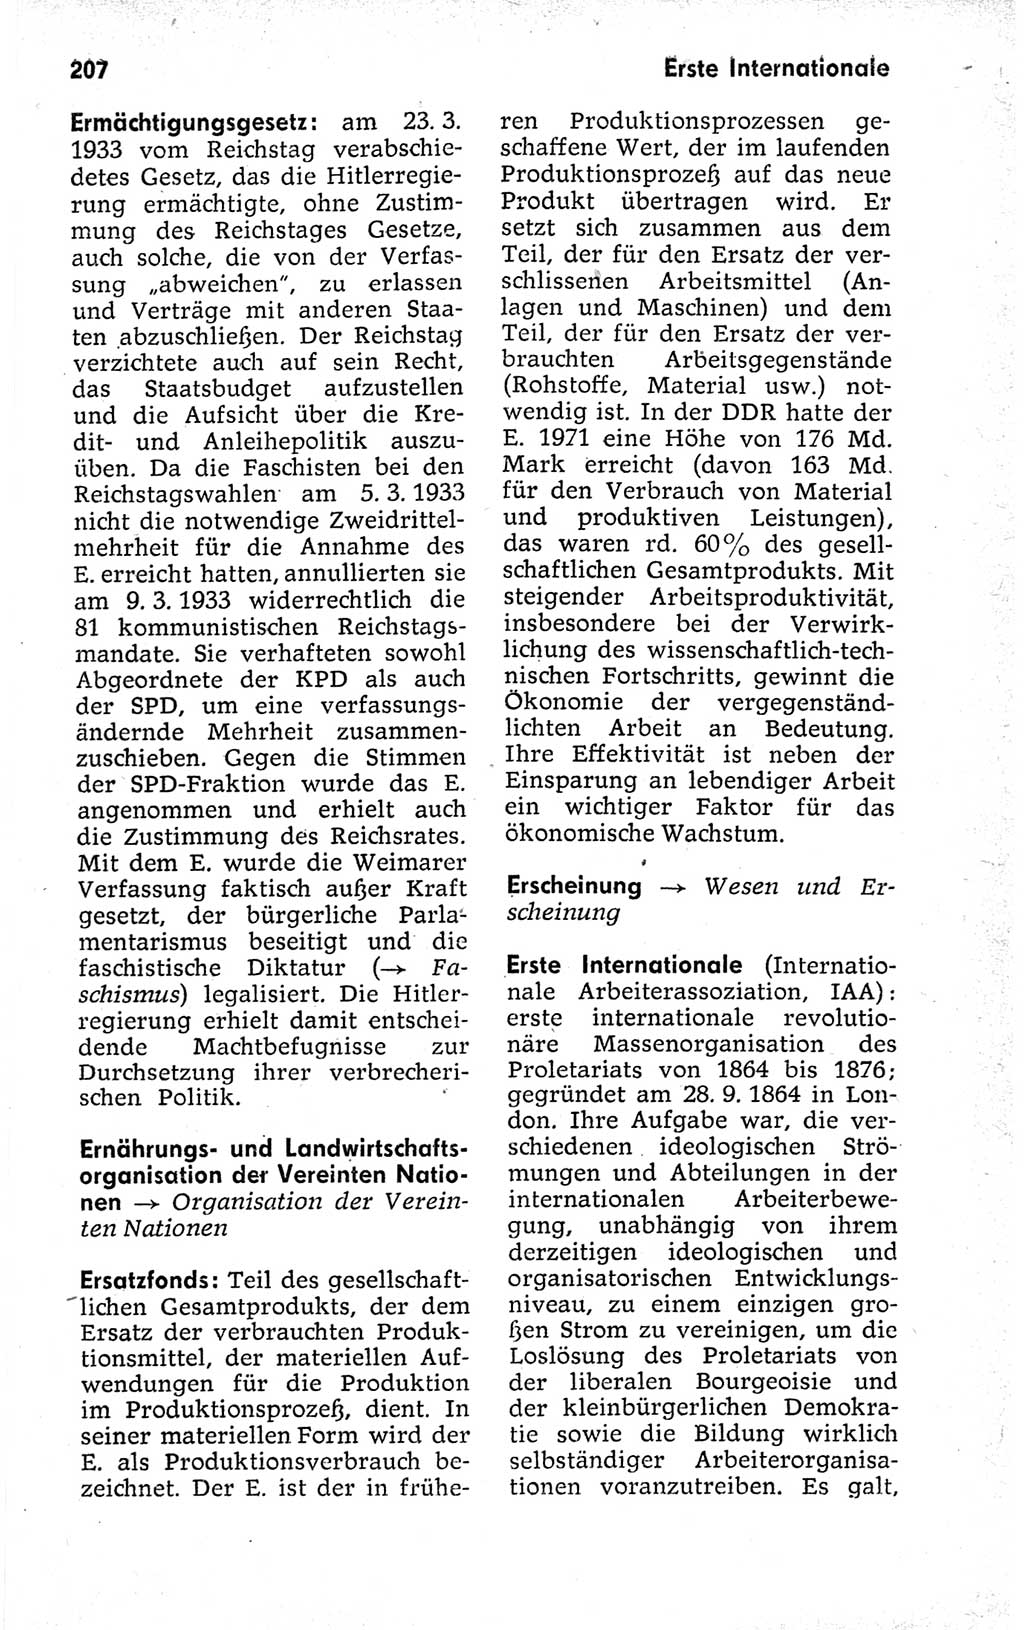 Kleines politisches Wörterbuch [Deutsche Demokratische Republik (DDR)] 1973, Seite 207 (Kl. pol. Wb. DDR 1973, S. 207)